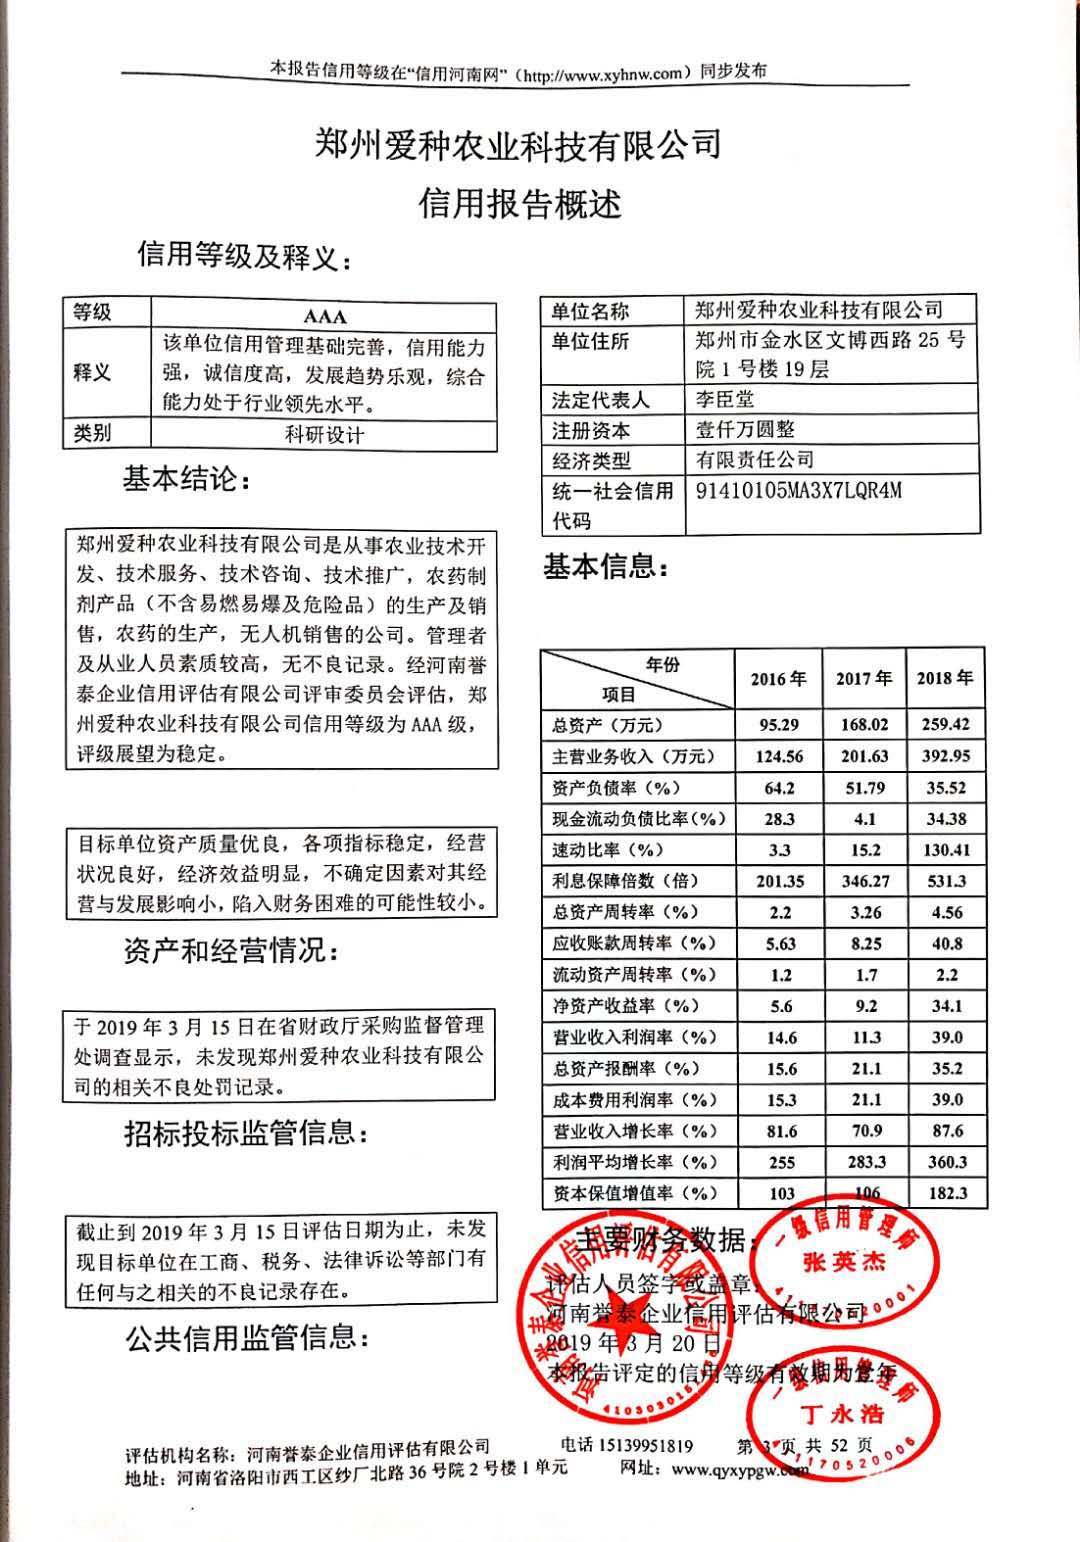 郑州市内促进会备案的信用评估公司-河南誉泰专业信任